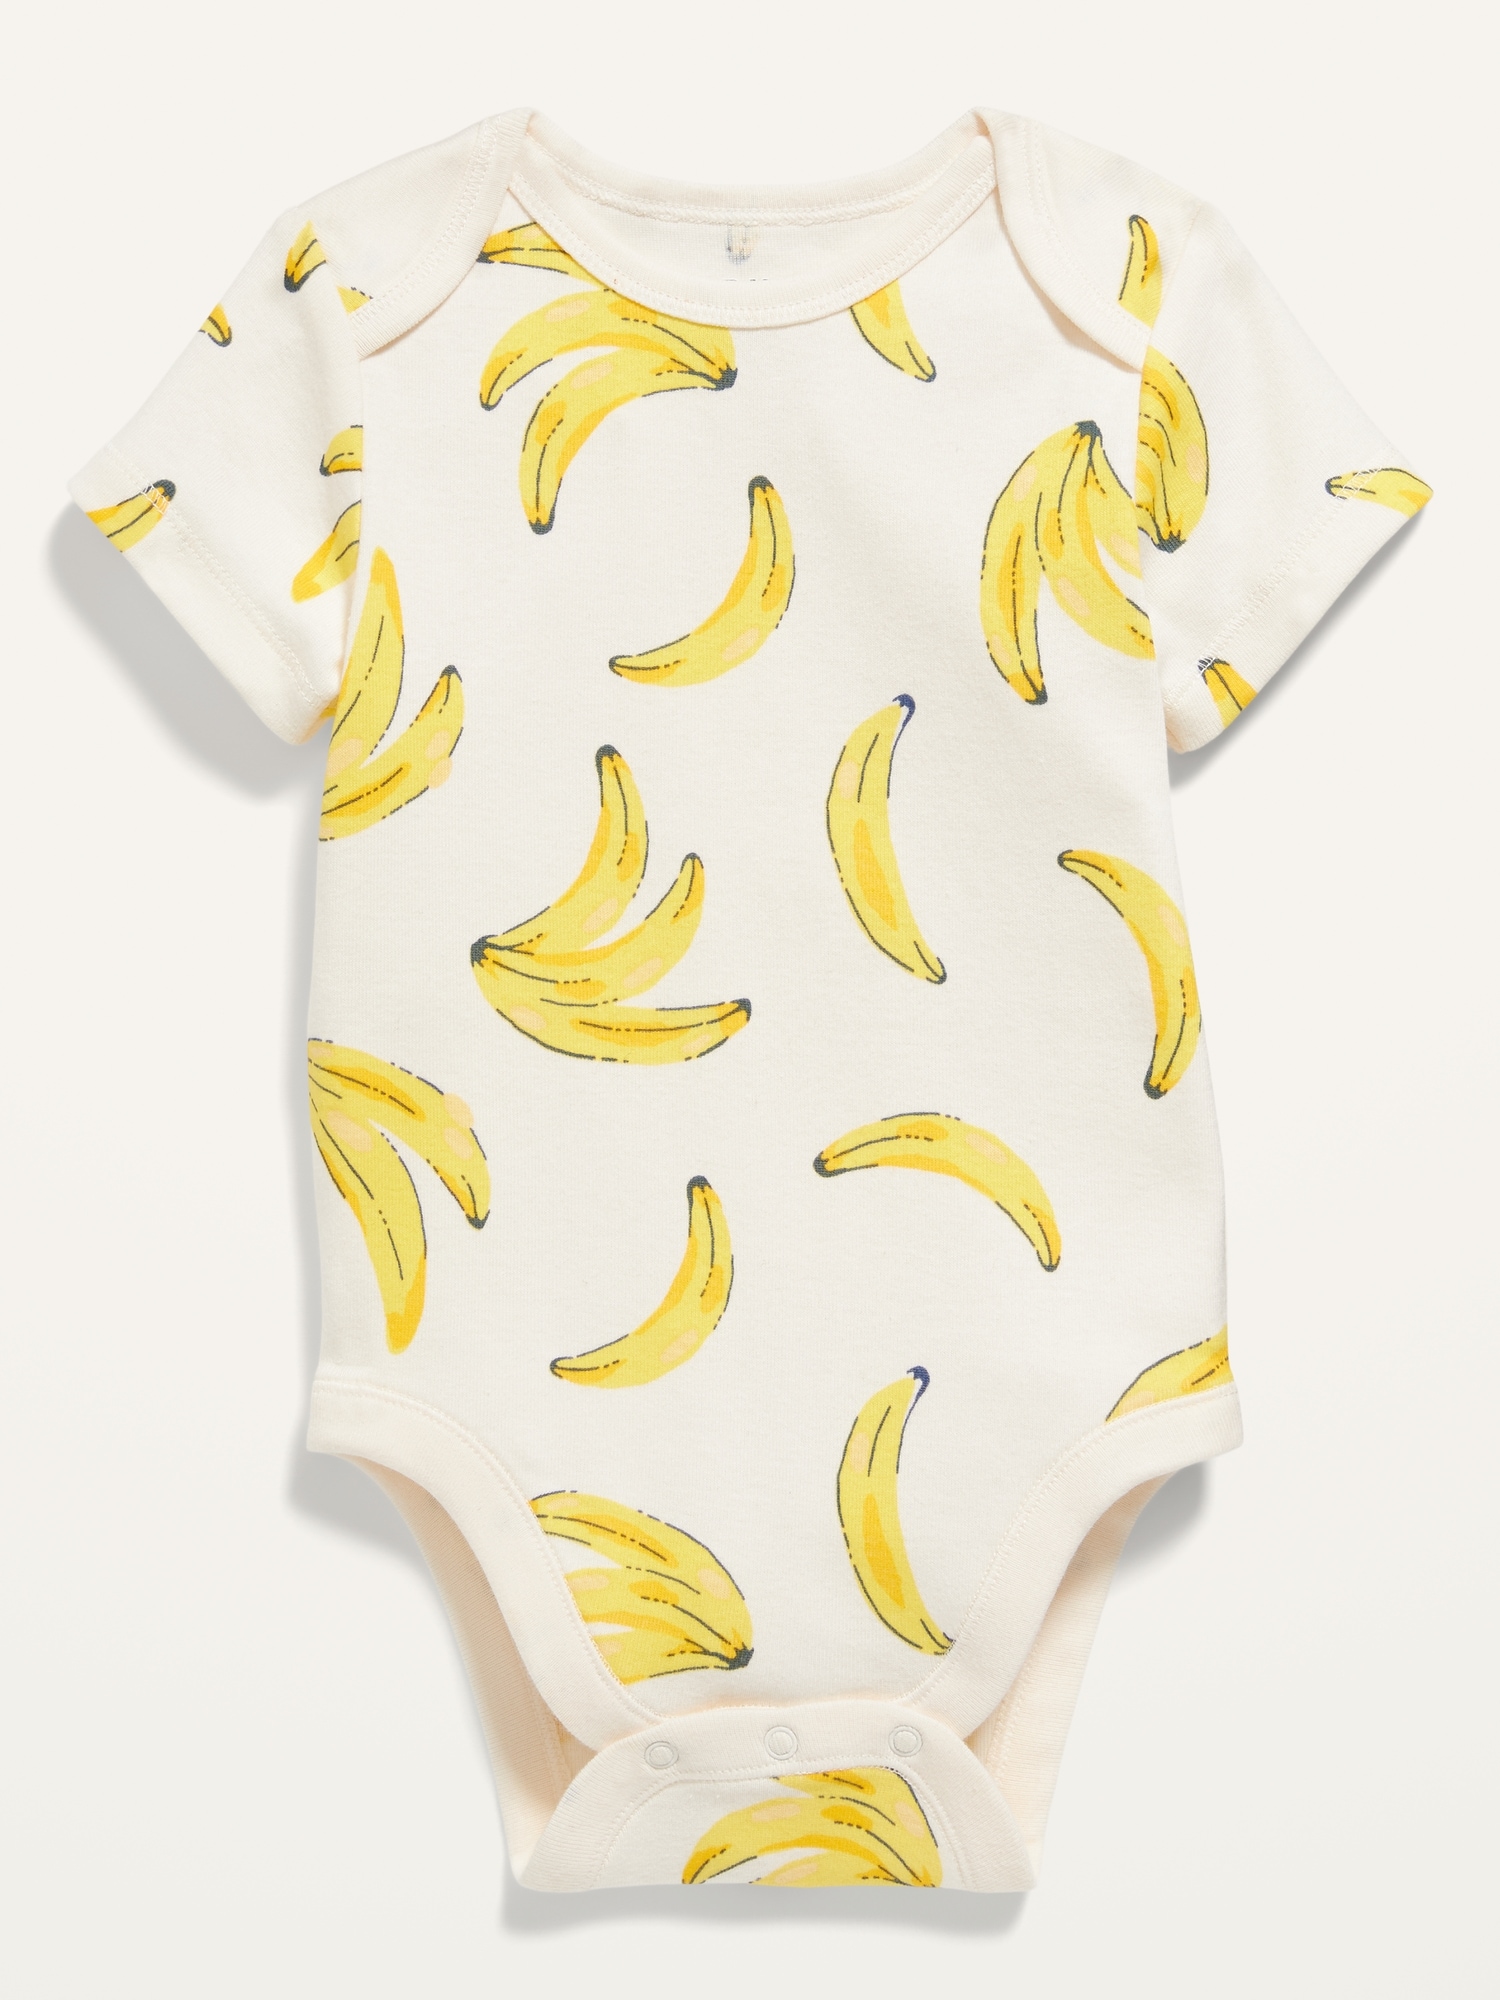 Unisex Short-Sleeve Printed Bodysuit for Baby